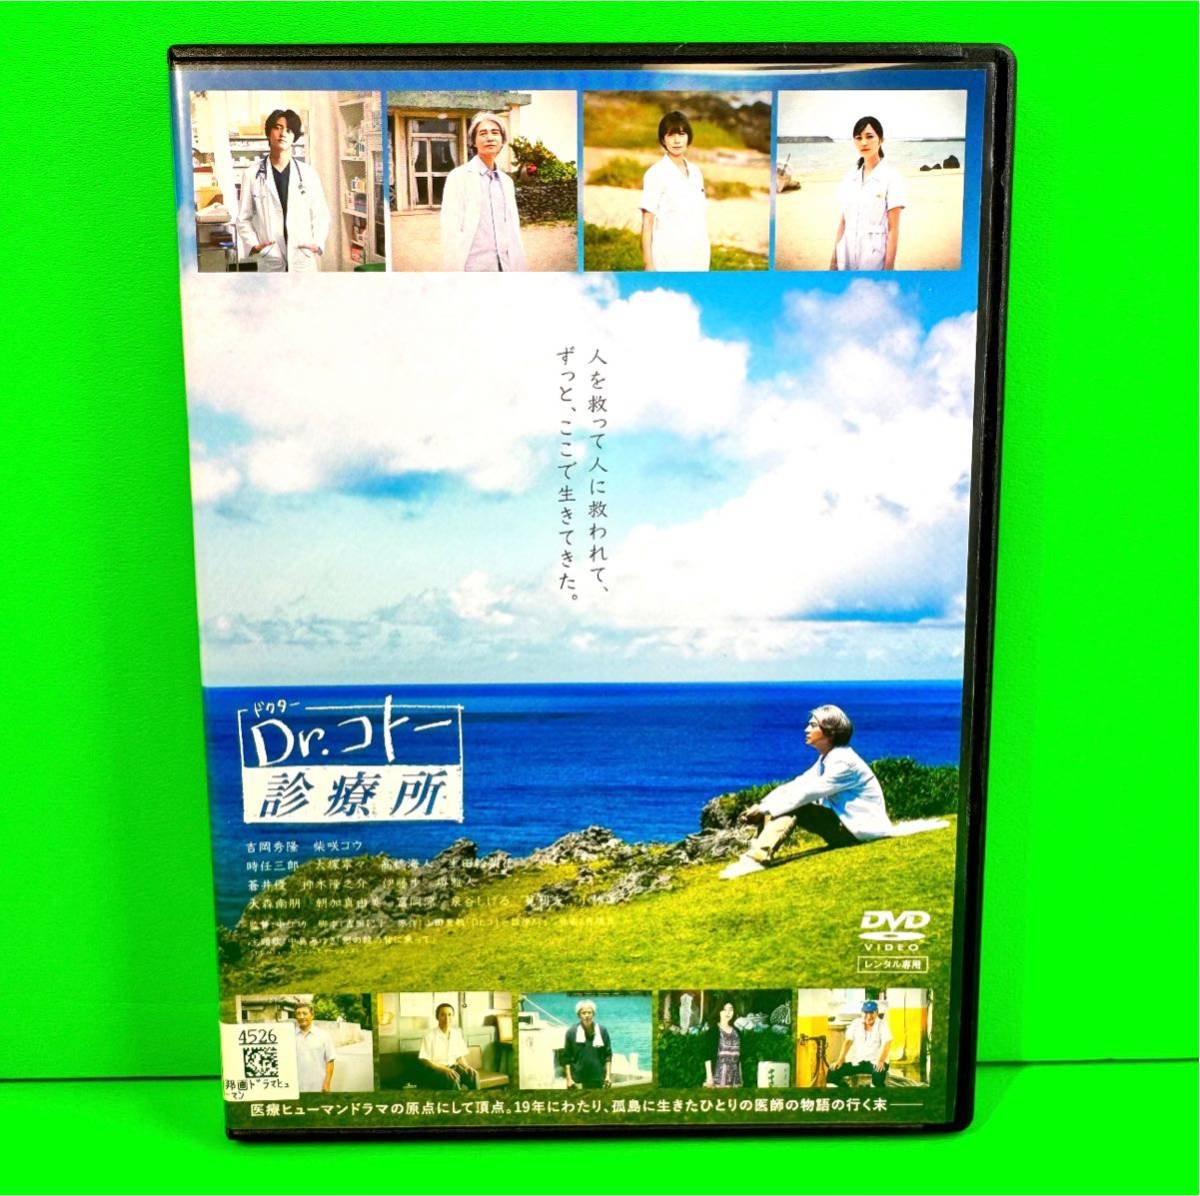 映画『Dr.コトー診療所』 DVD 吉岡秀隆 /柴咲コウ /時任三郎_画像1